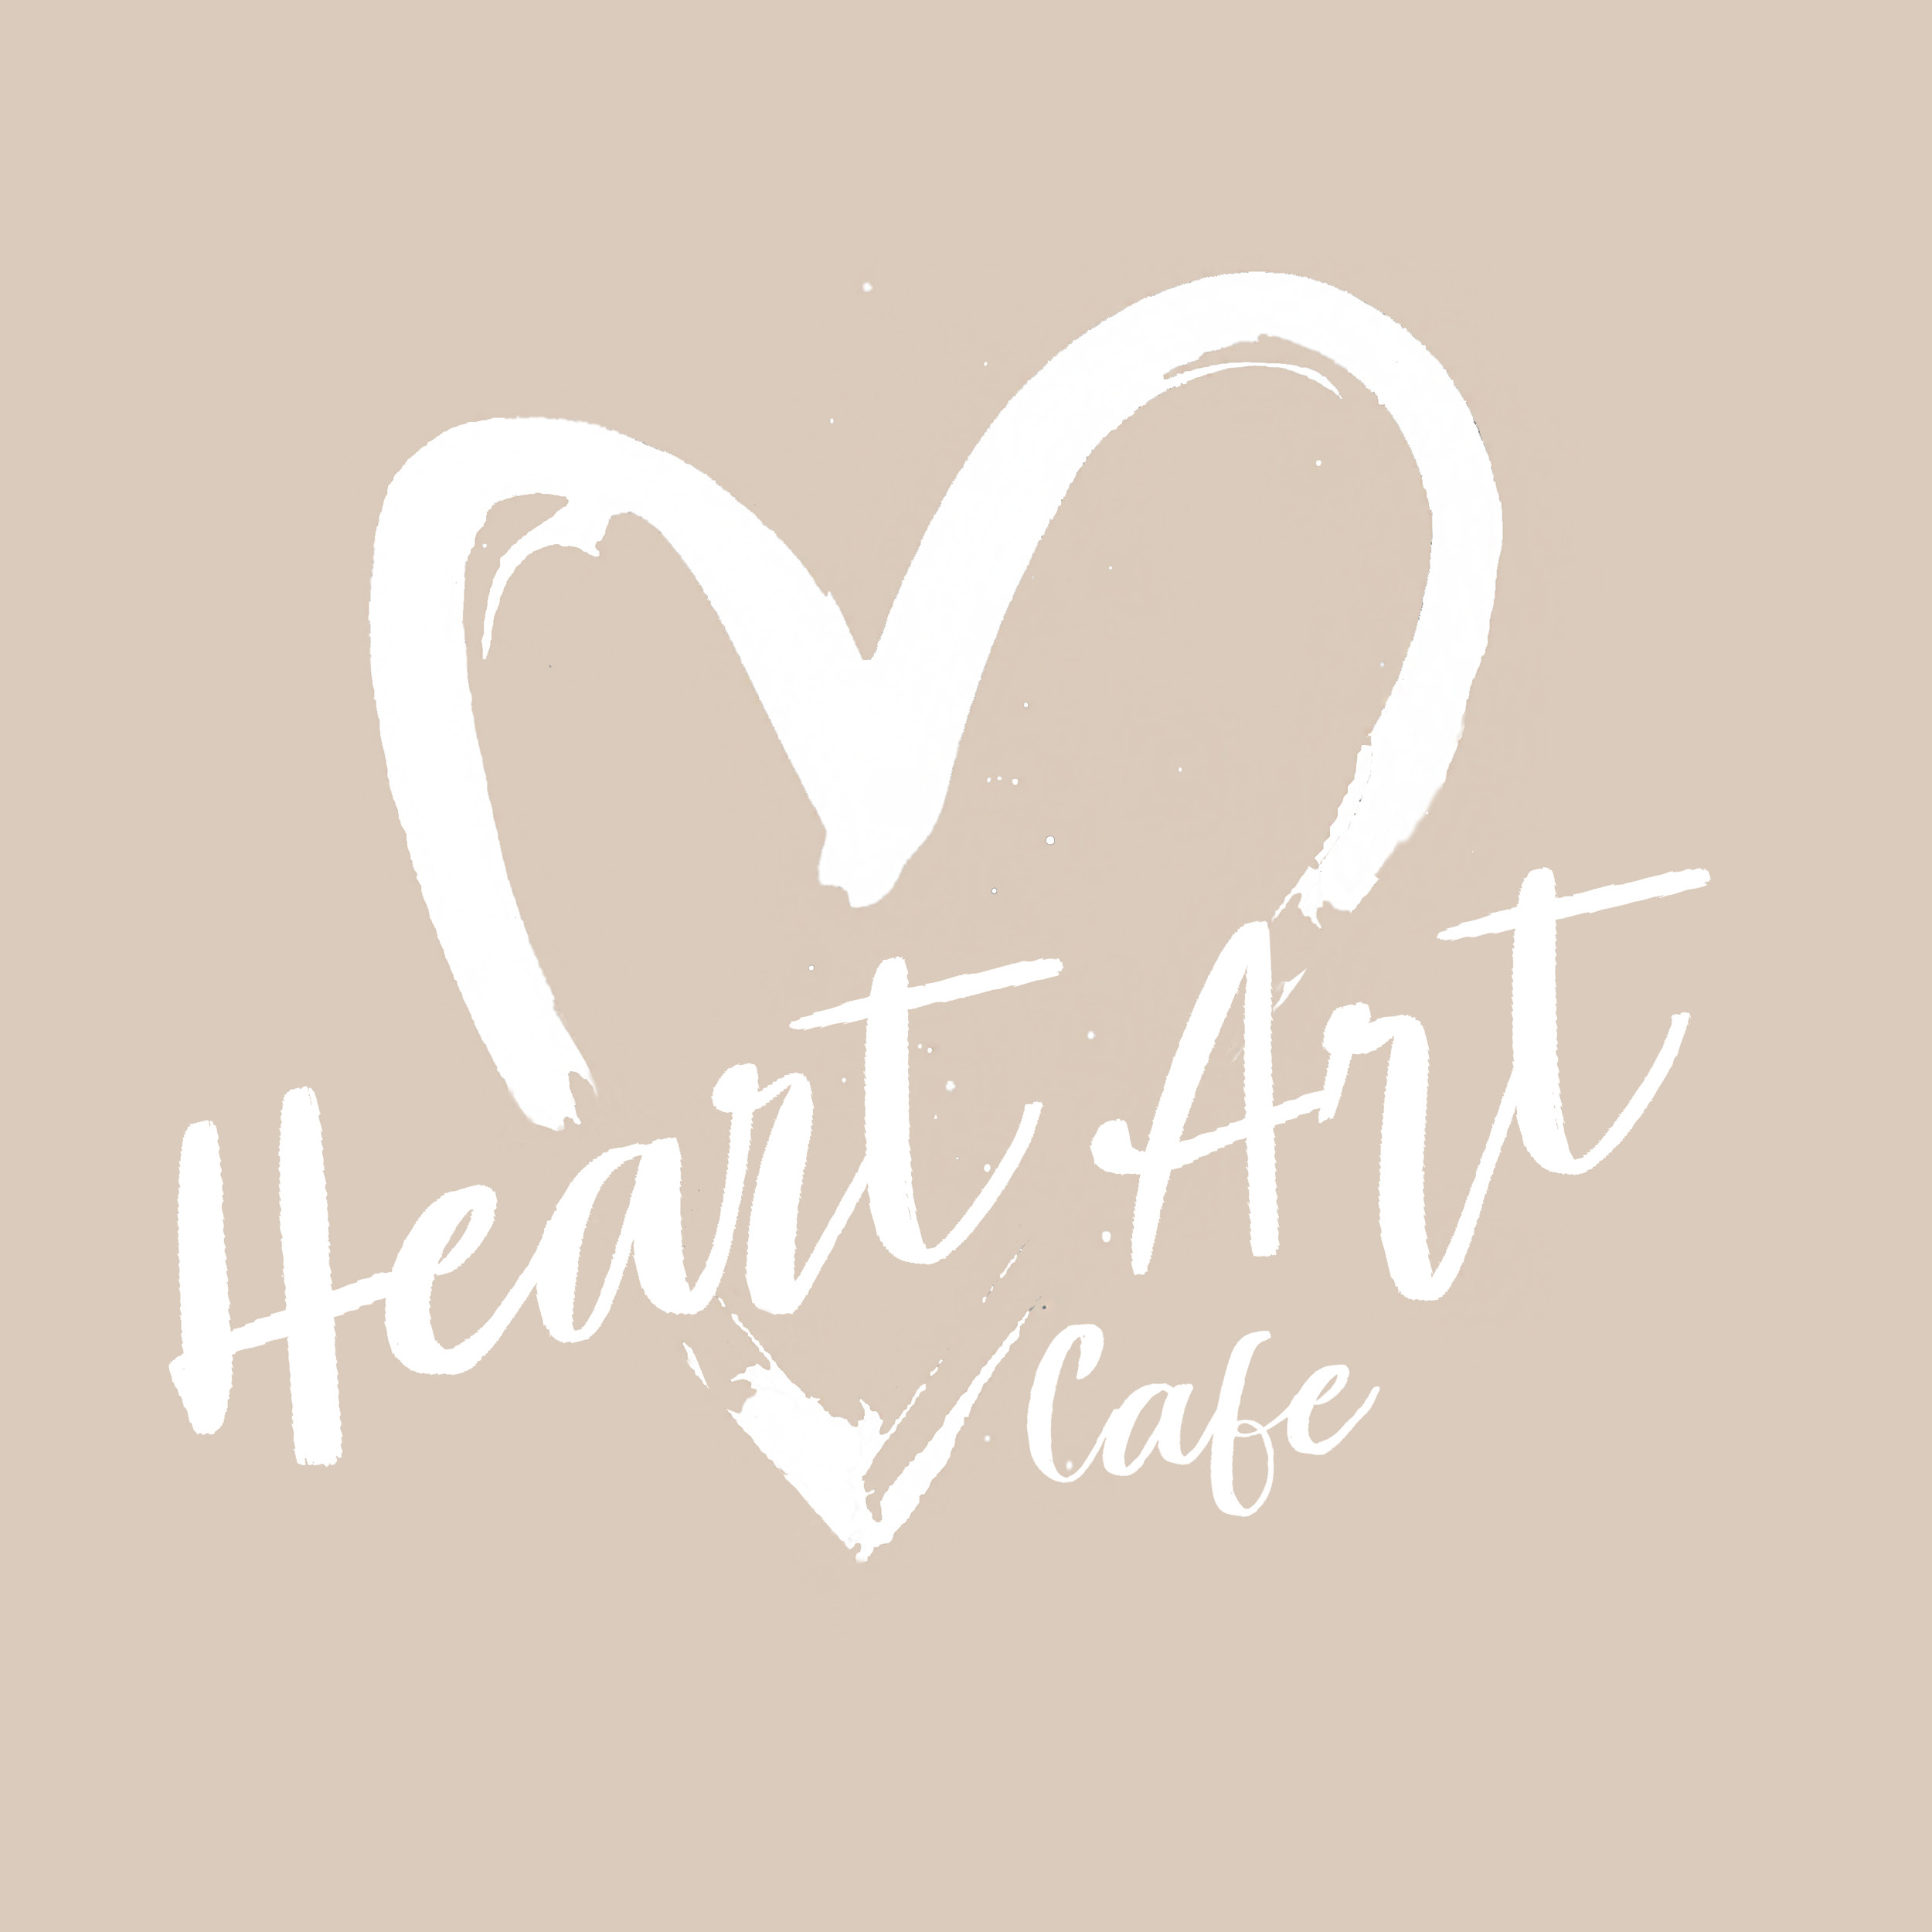 Heart Art Cafe